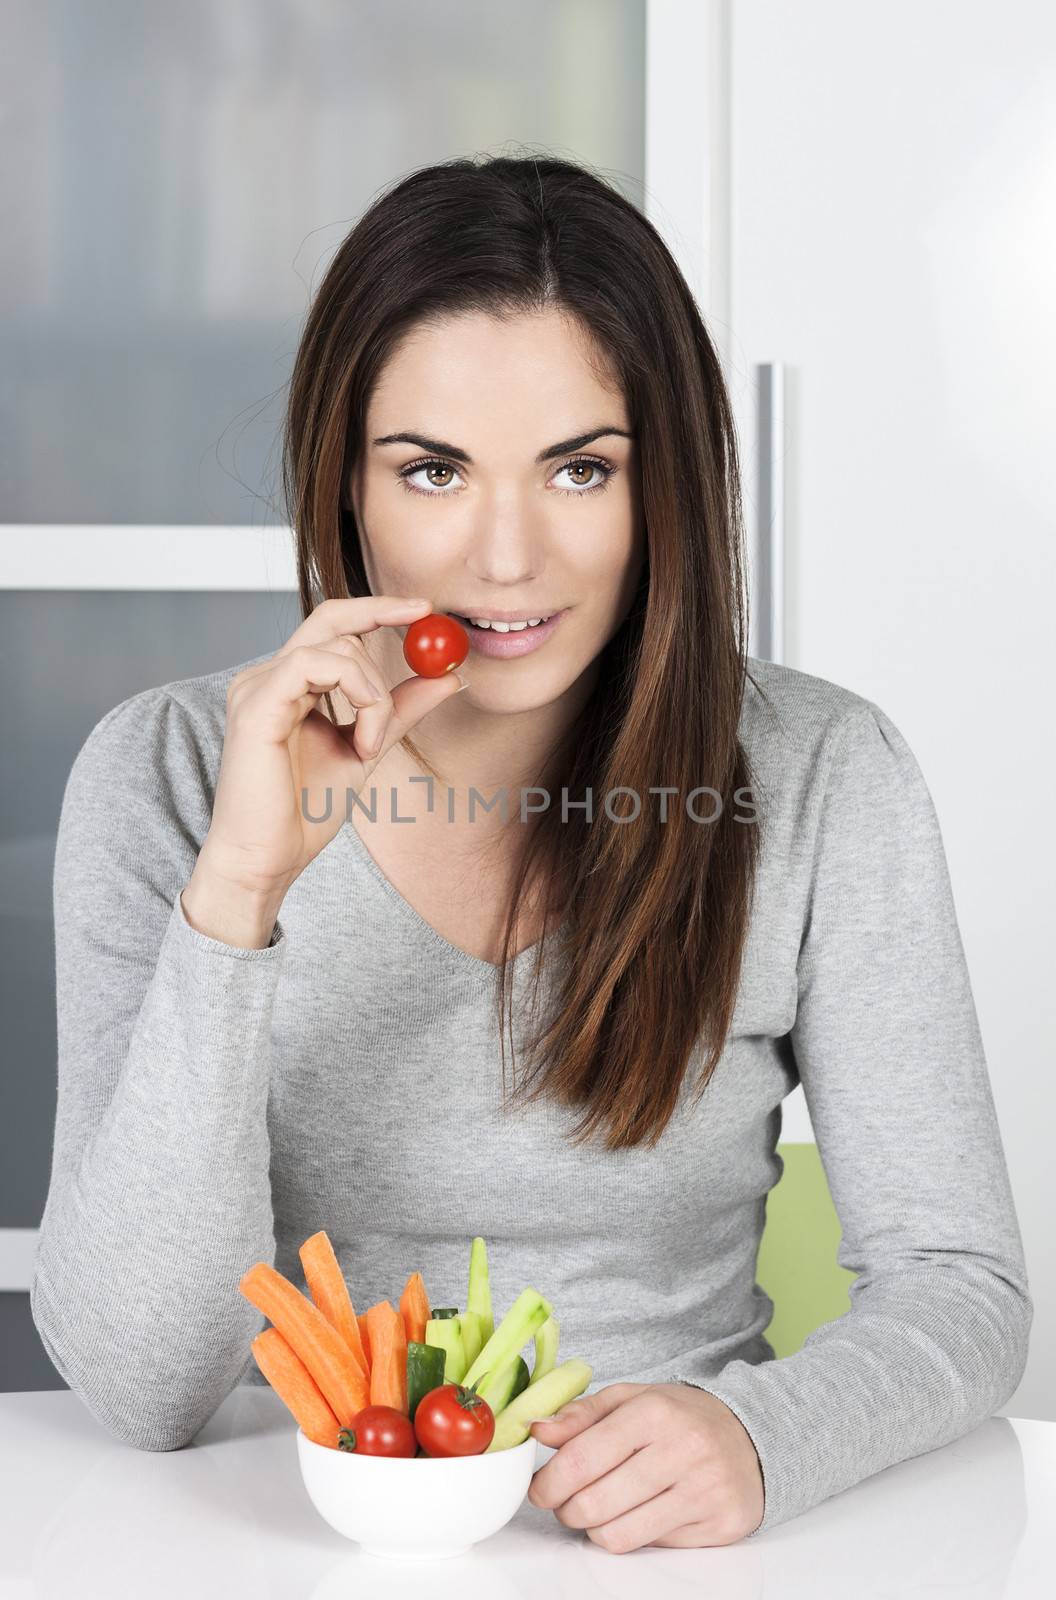 Cute girl eating healthy food by vwalakte